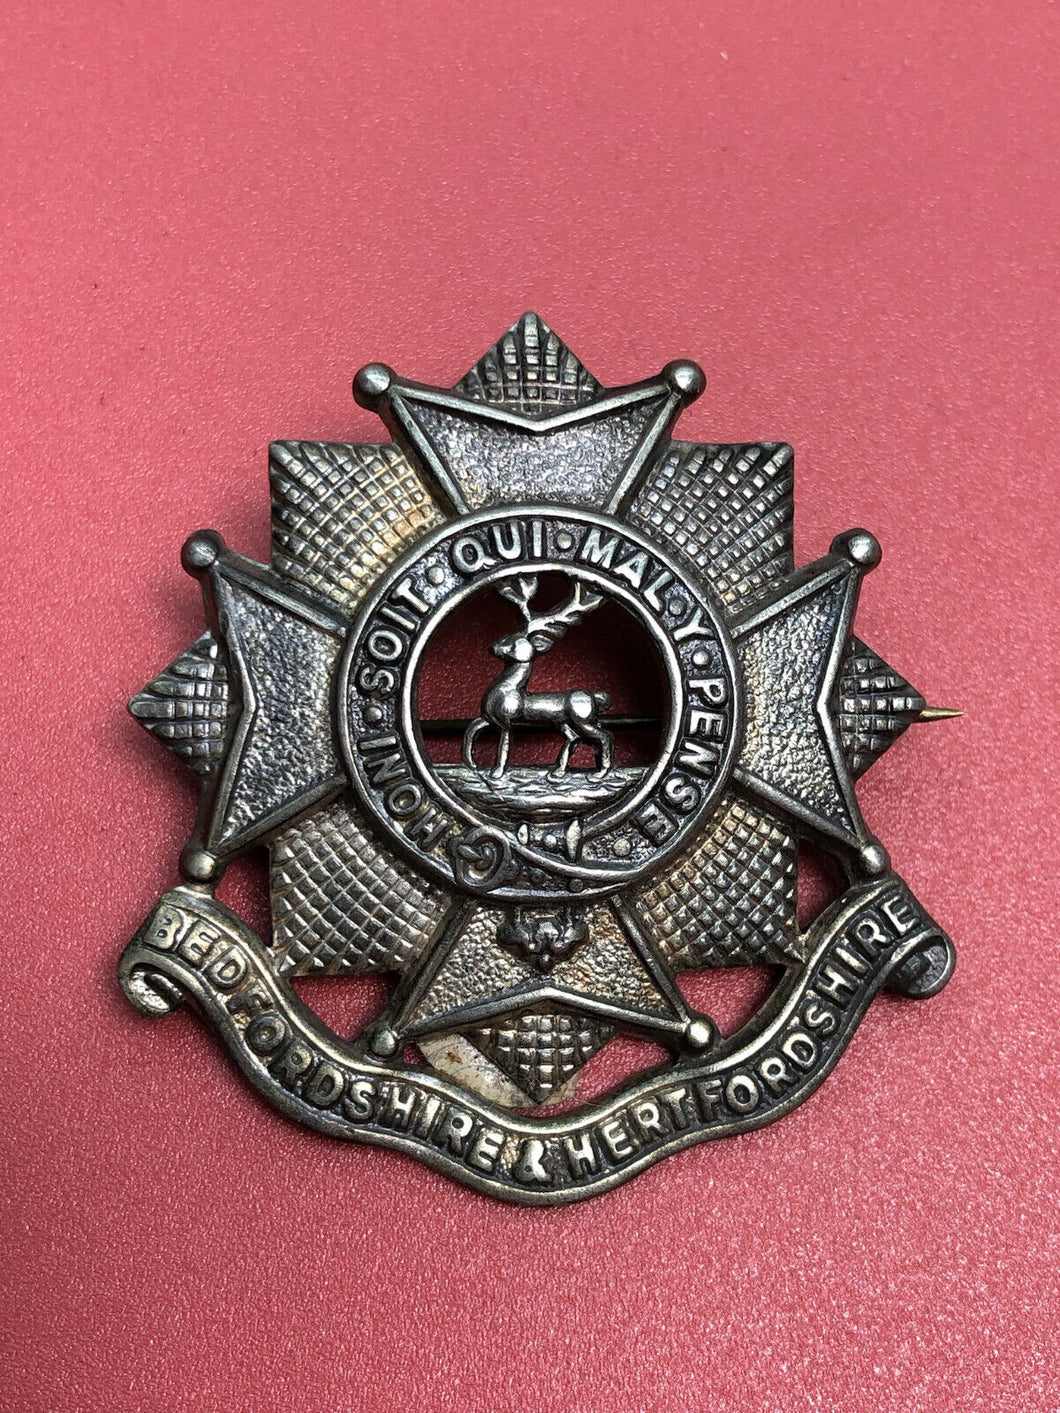 WW2 British Army Cap Badge Brooch - Bedfordshire & Hertfordshire Regiment